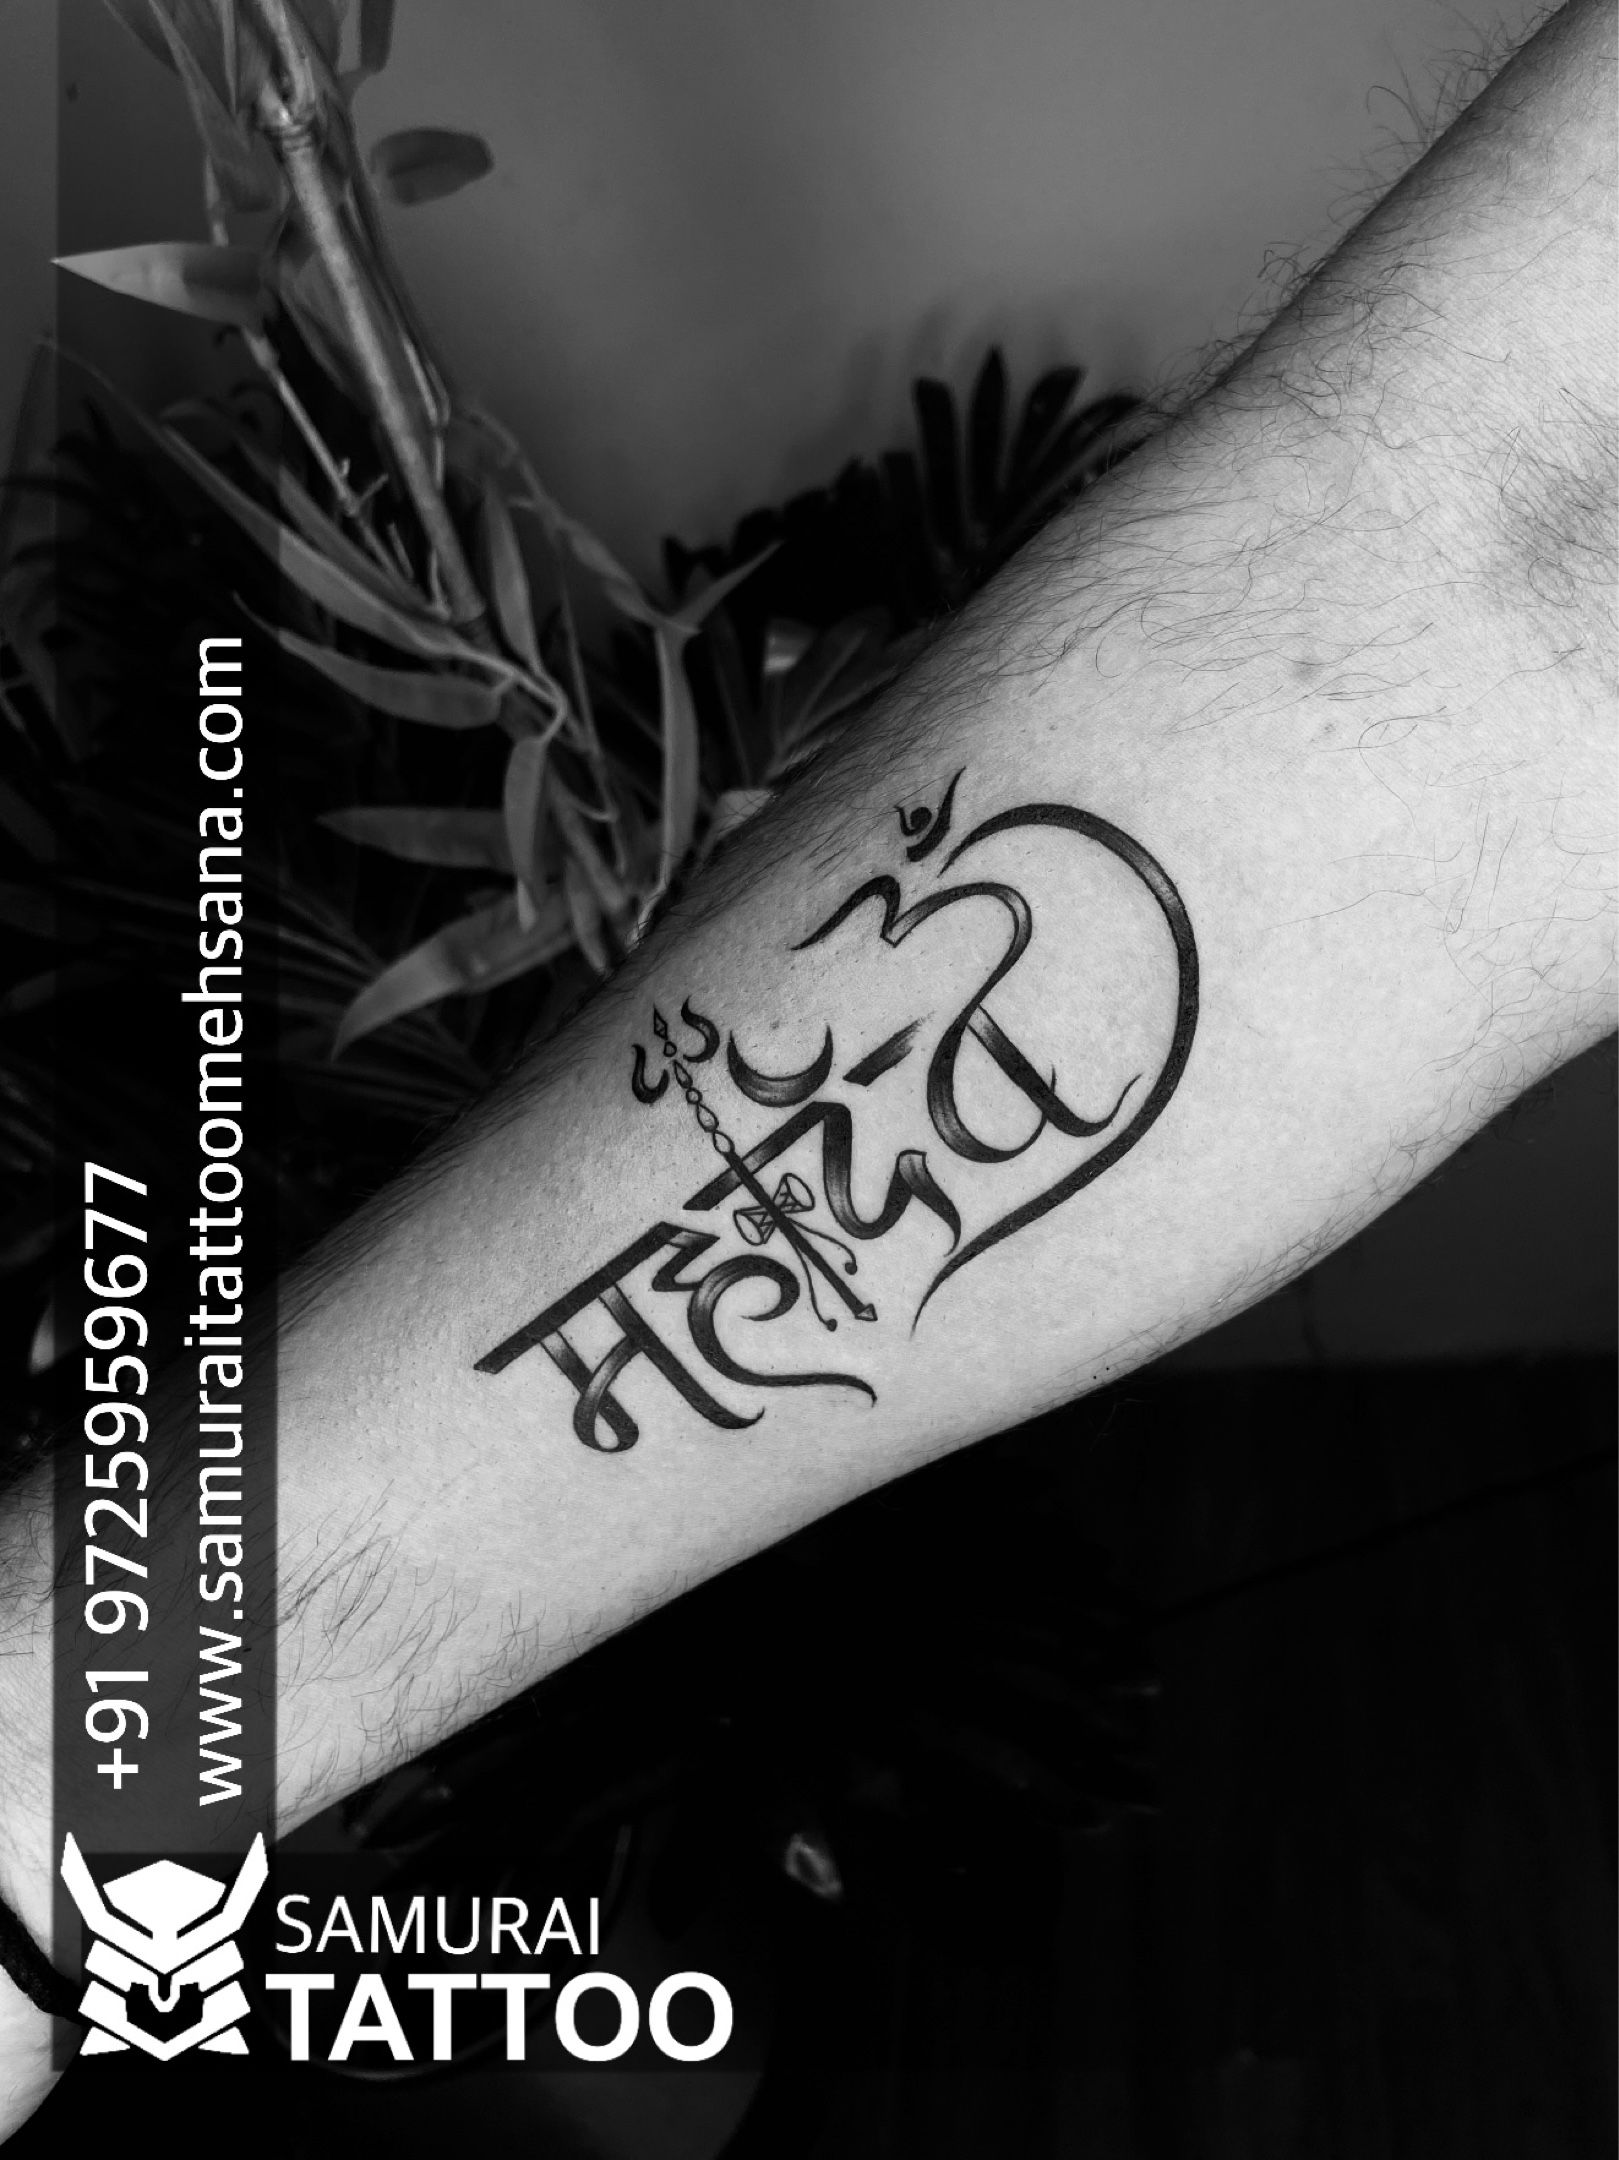 tattooshivaji#tattoo Shiv Shambhu#trending tattoo#real tattoo#tattoo ideas#nearby  me tattoo studio#psnailart | Instagram